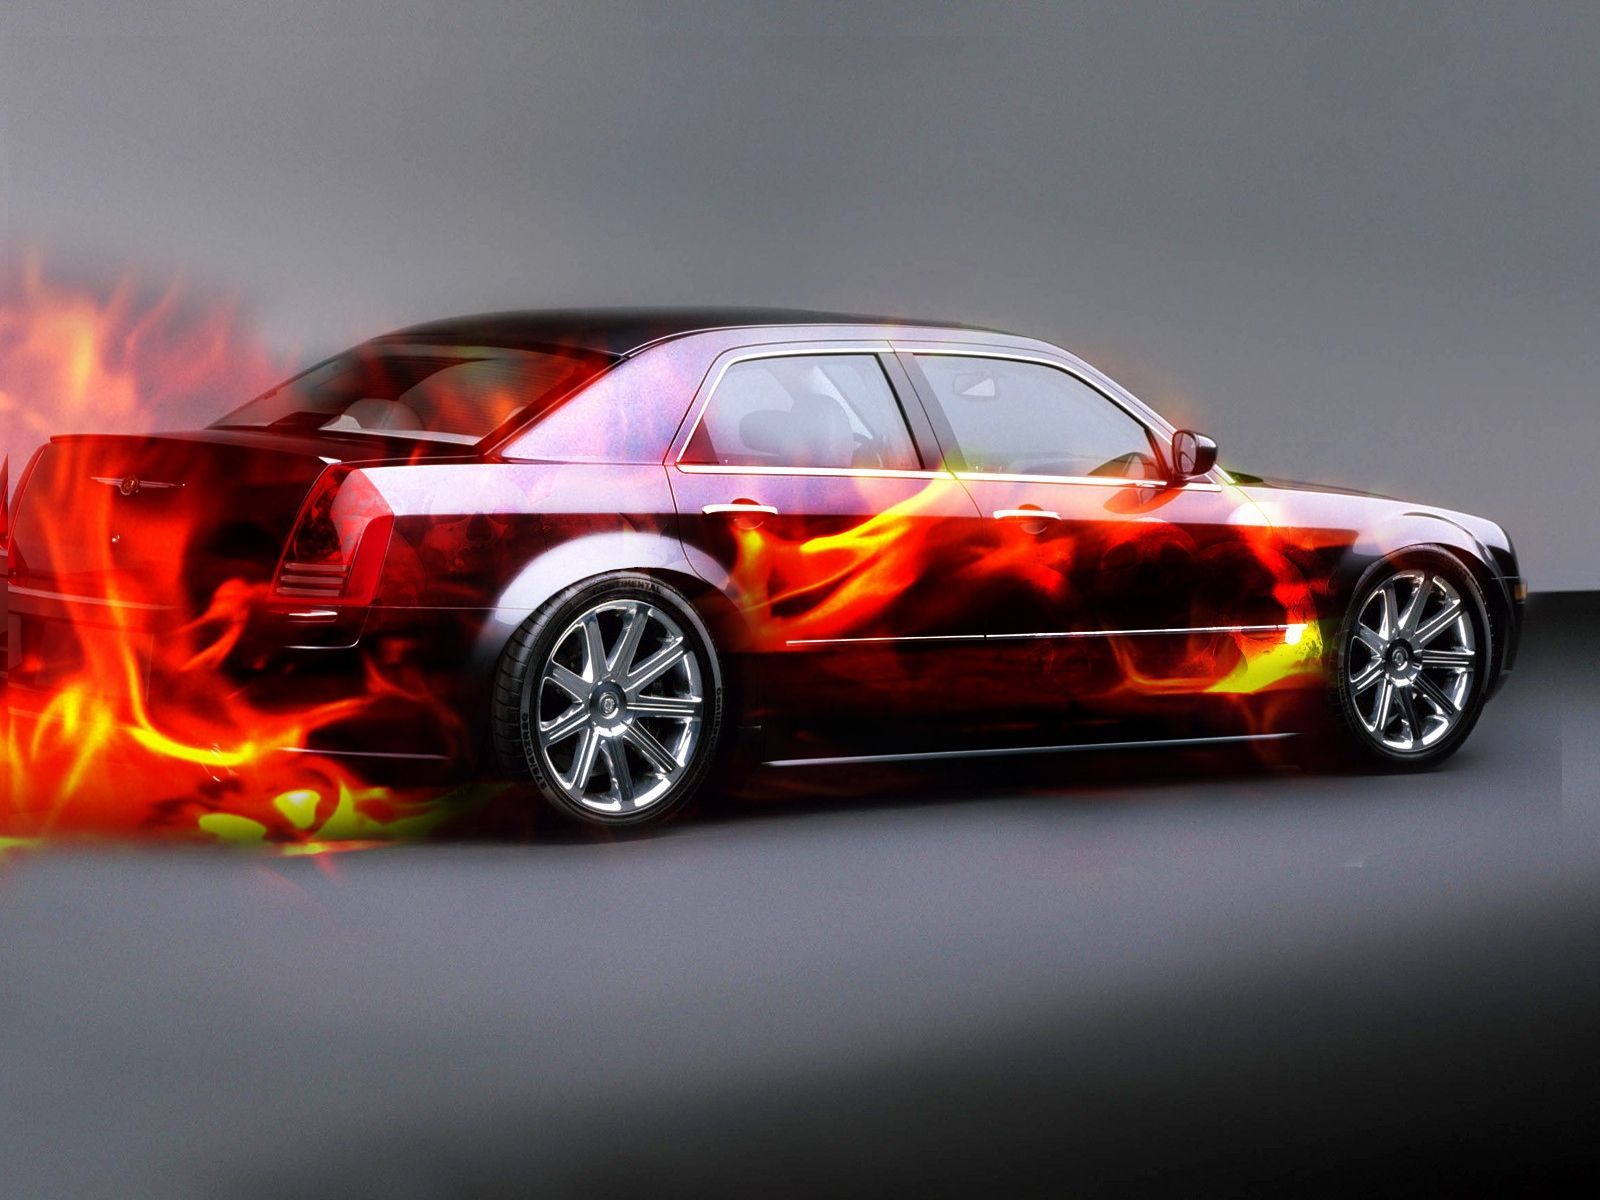 Hot Car Wallpapers burn burn uff - Wallpapers IN Desktop